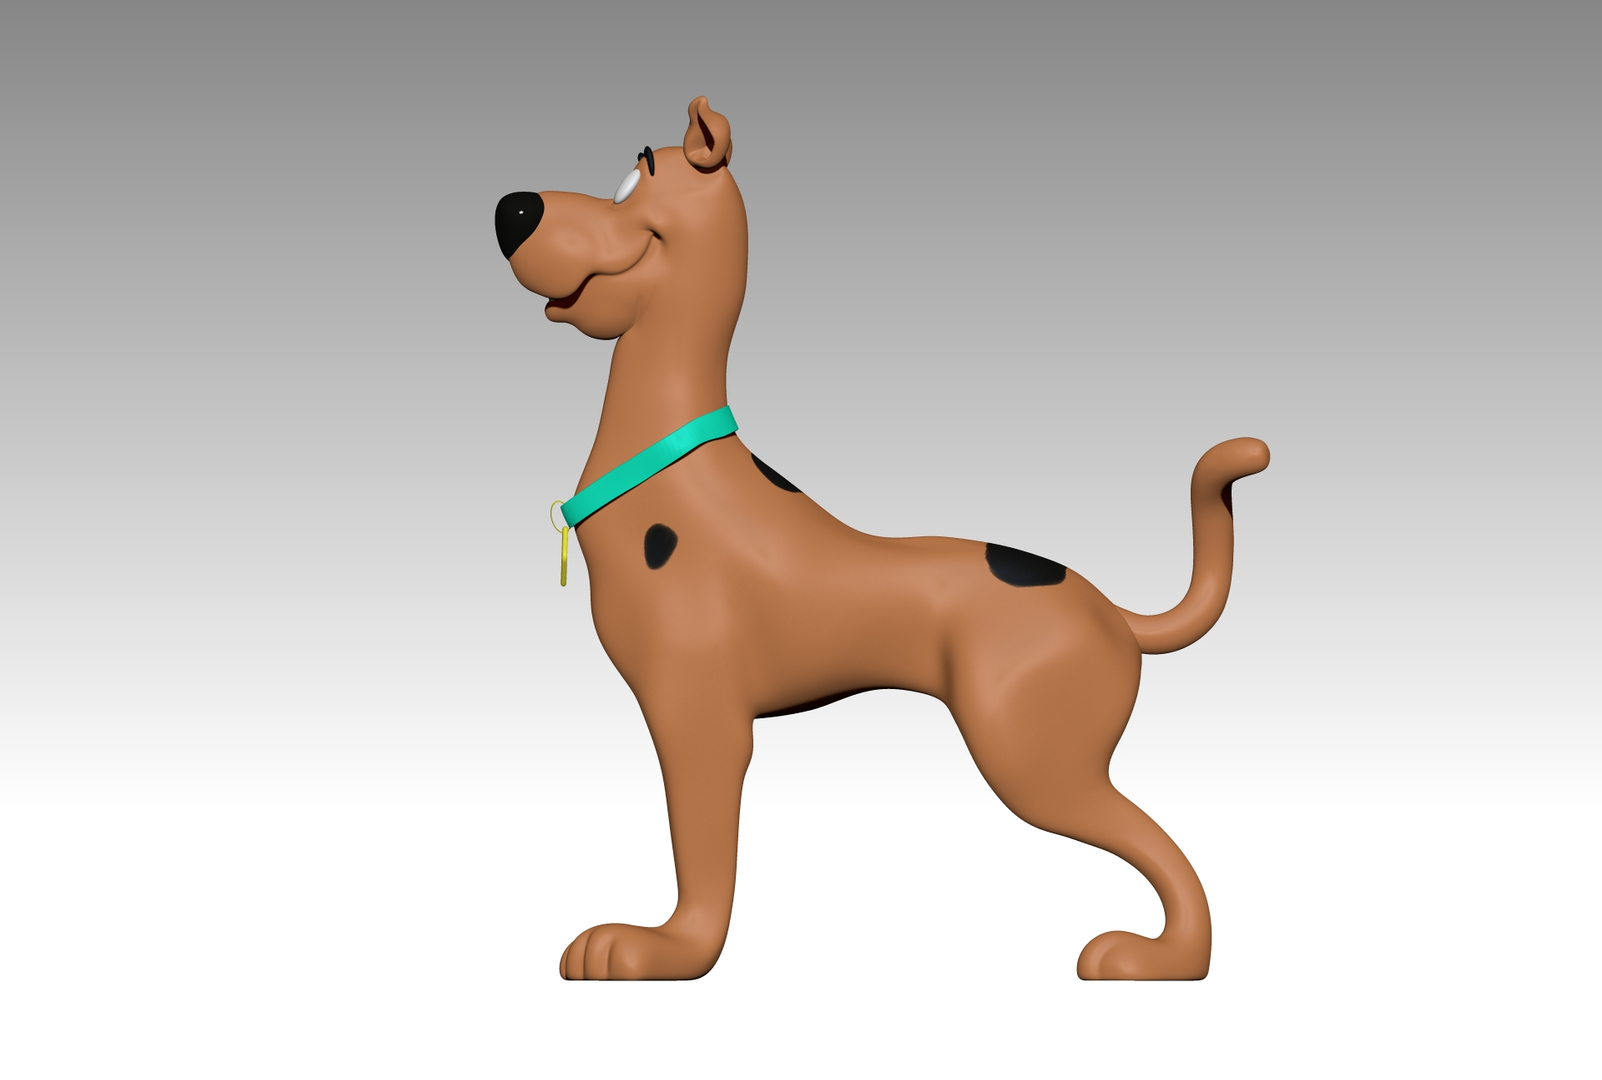 Scooby Doo Standing 3d Model Turbosquid 1691702